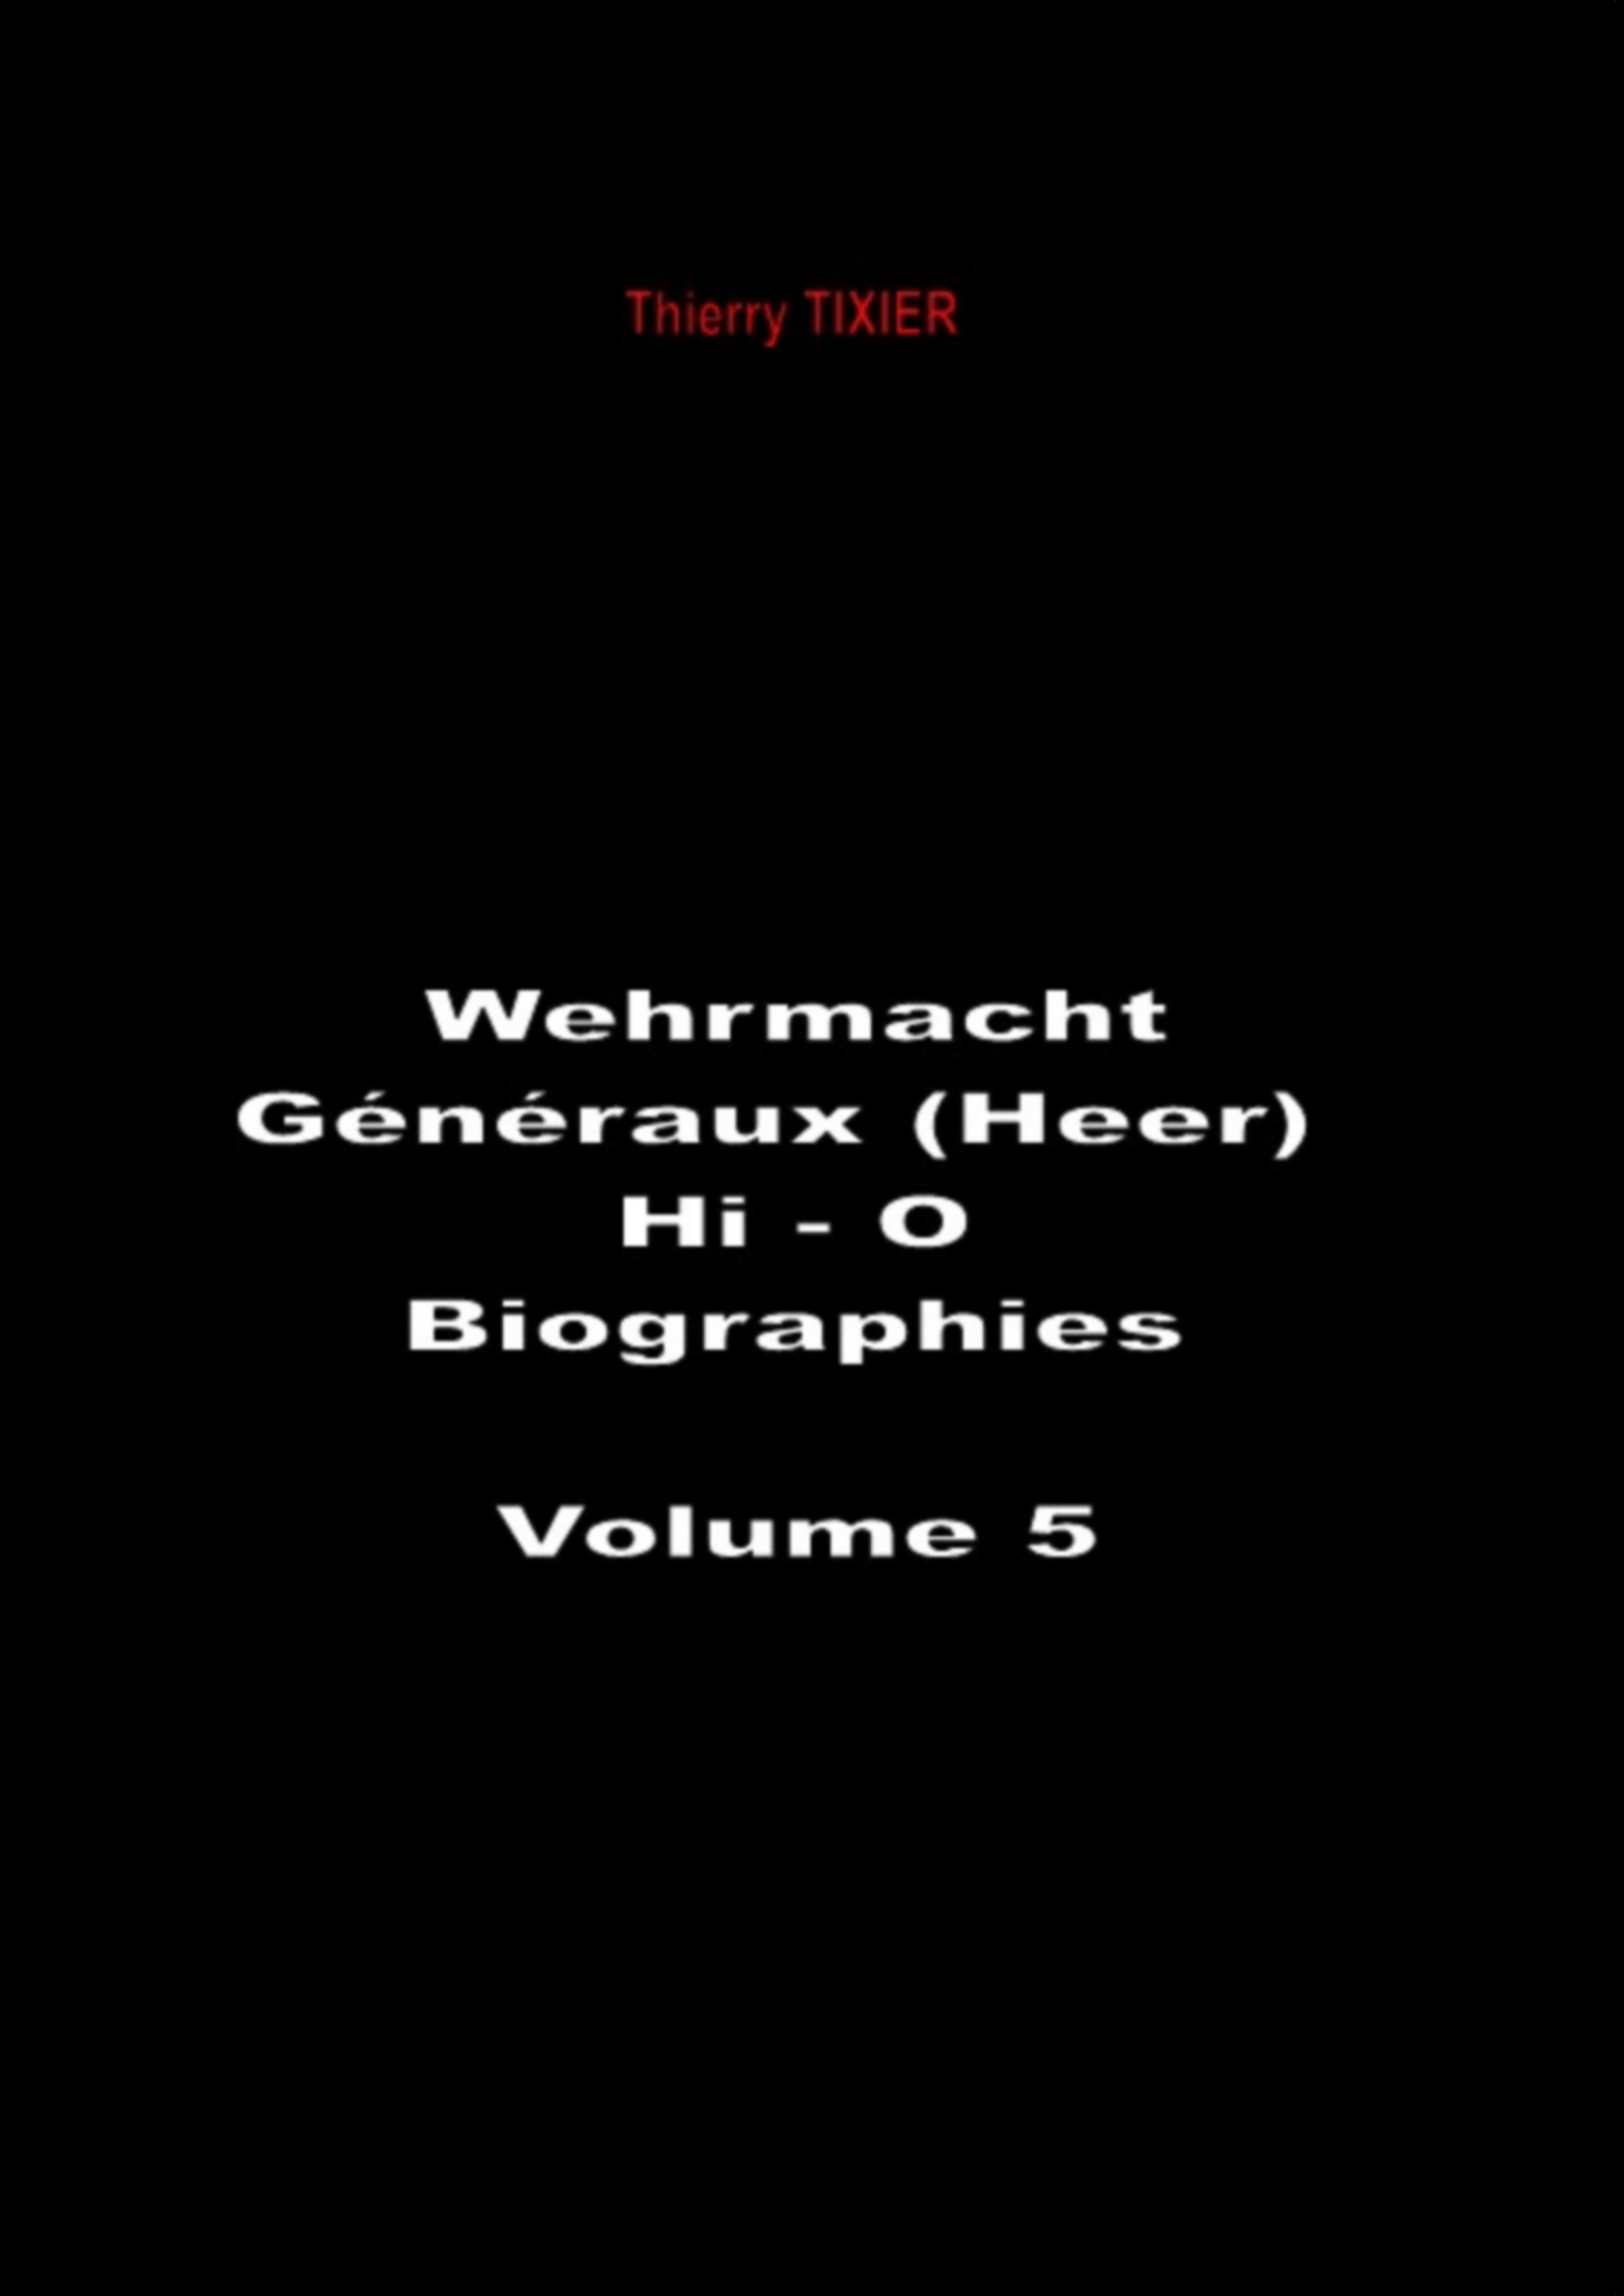 Wehrmacht - Généraux Heer (Hi-O)